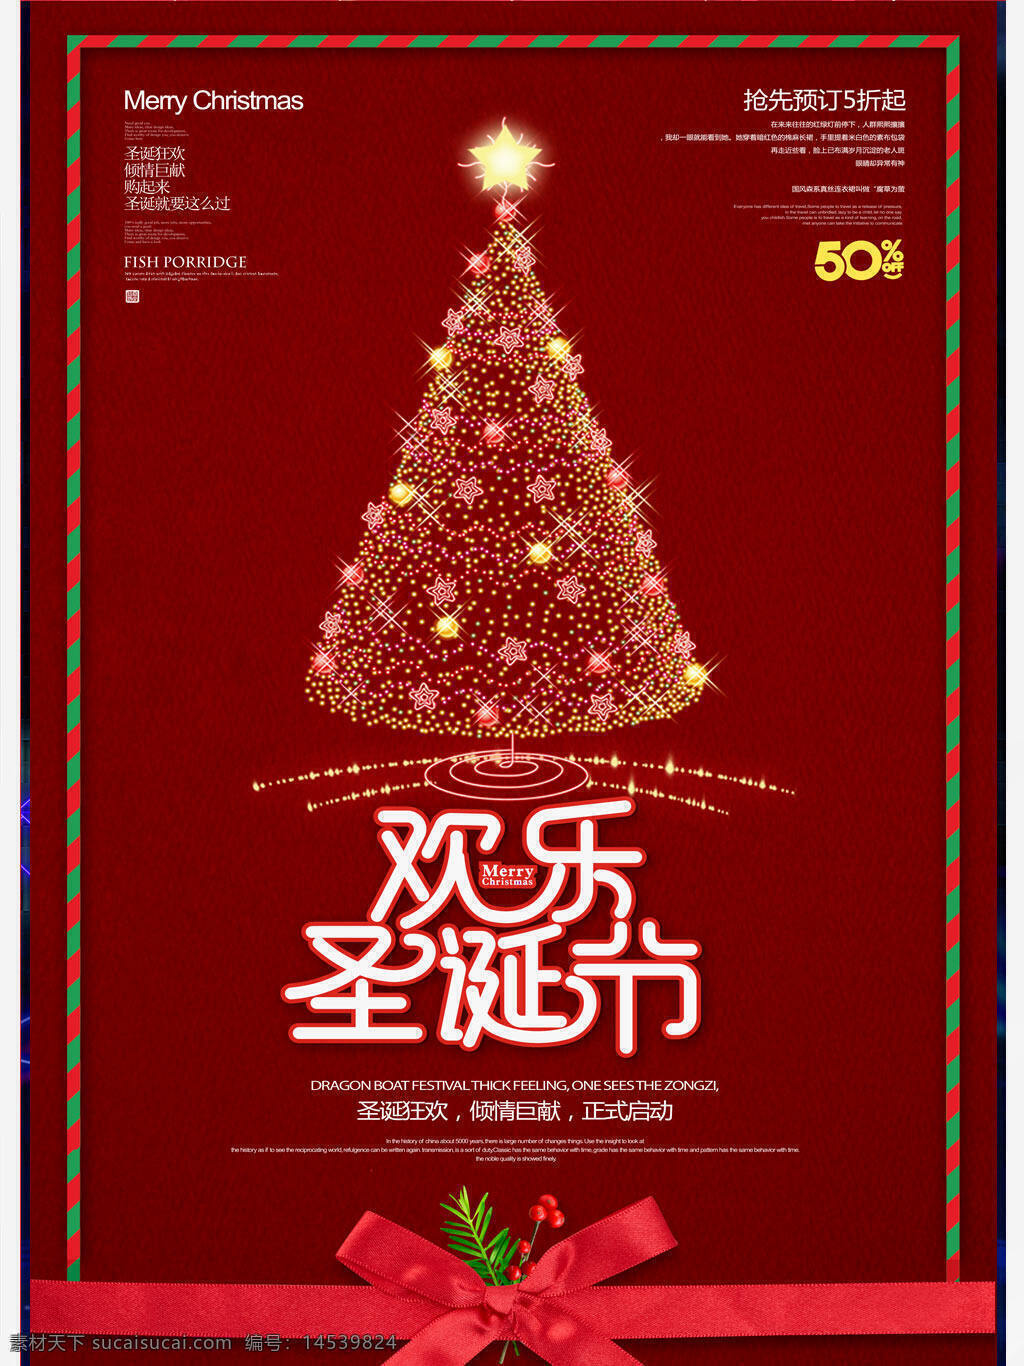 红色大气商场圣诞快乐圣诞节促销海报 红色 大气 商场 圣诞快乐 圣诞节 促销海报